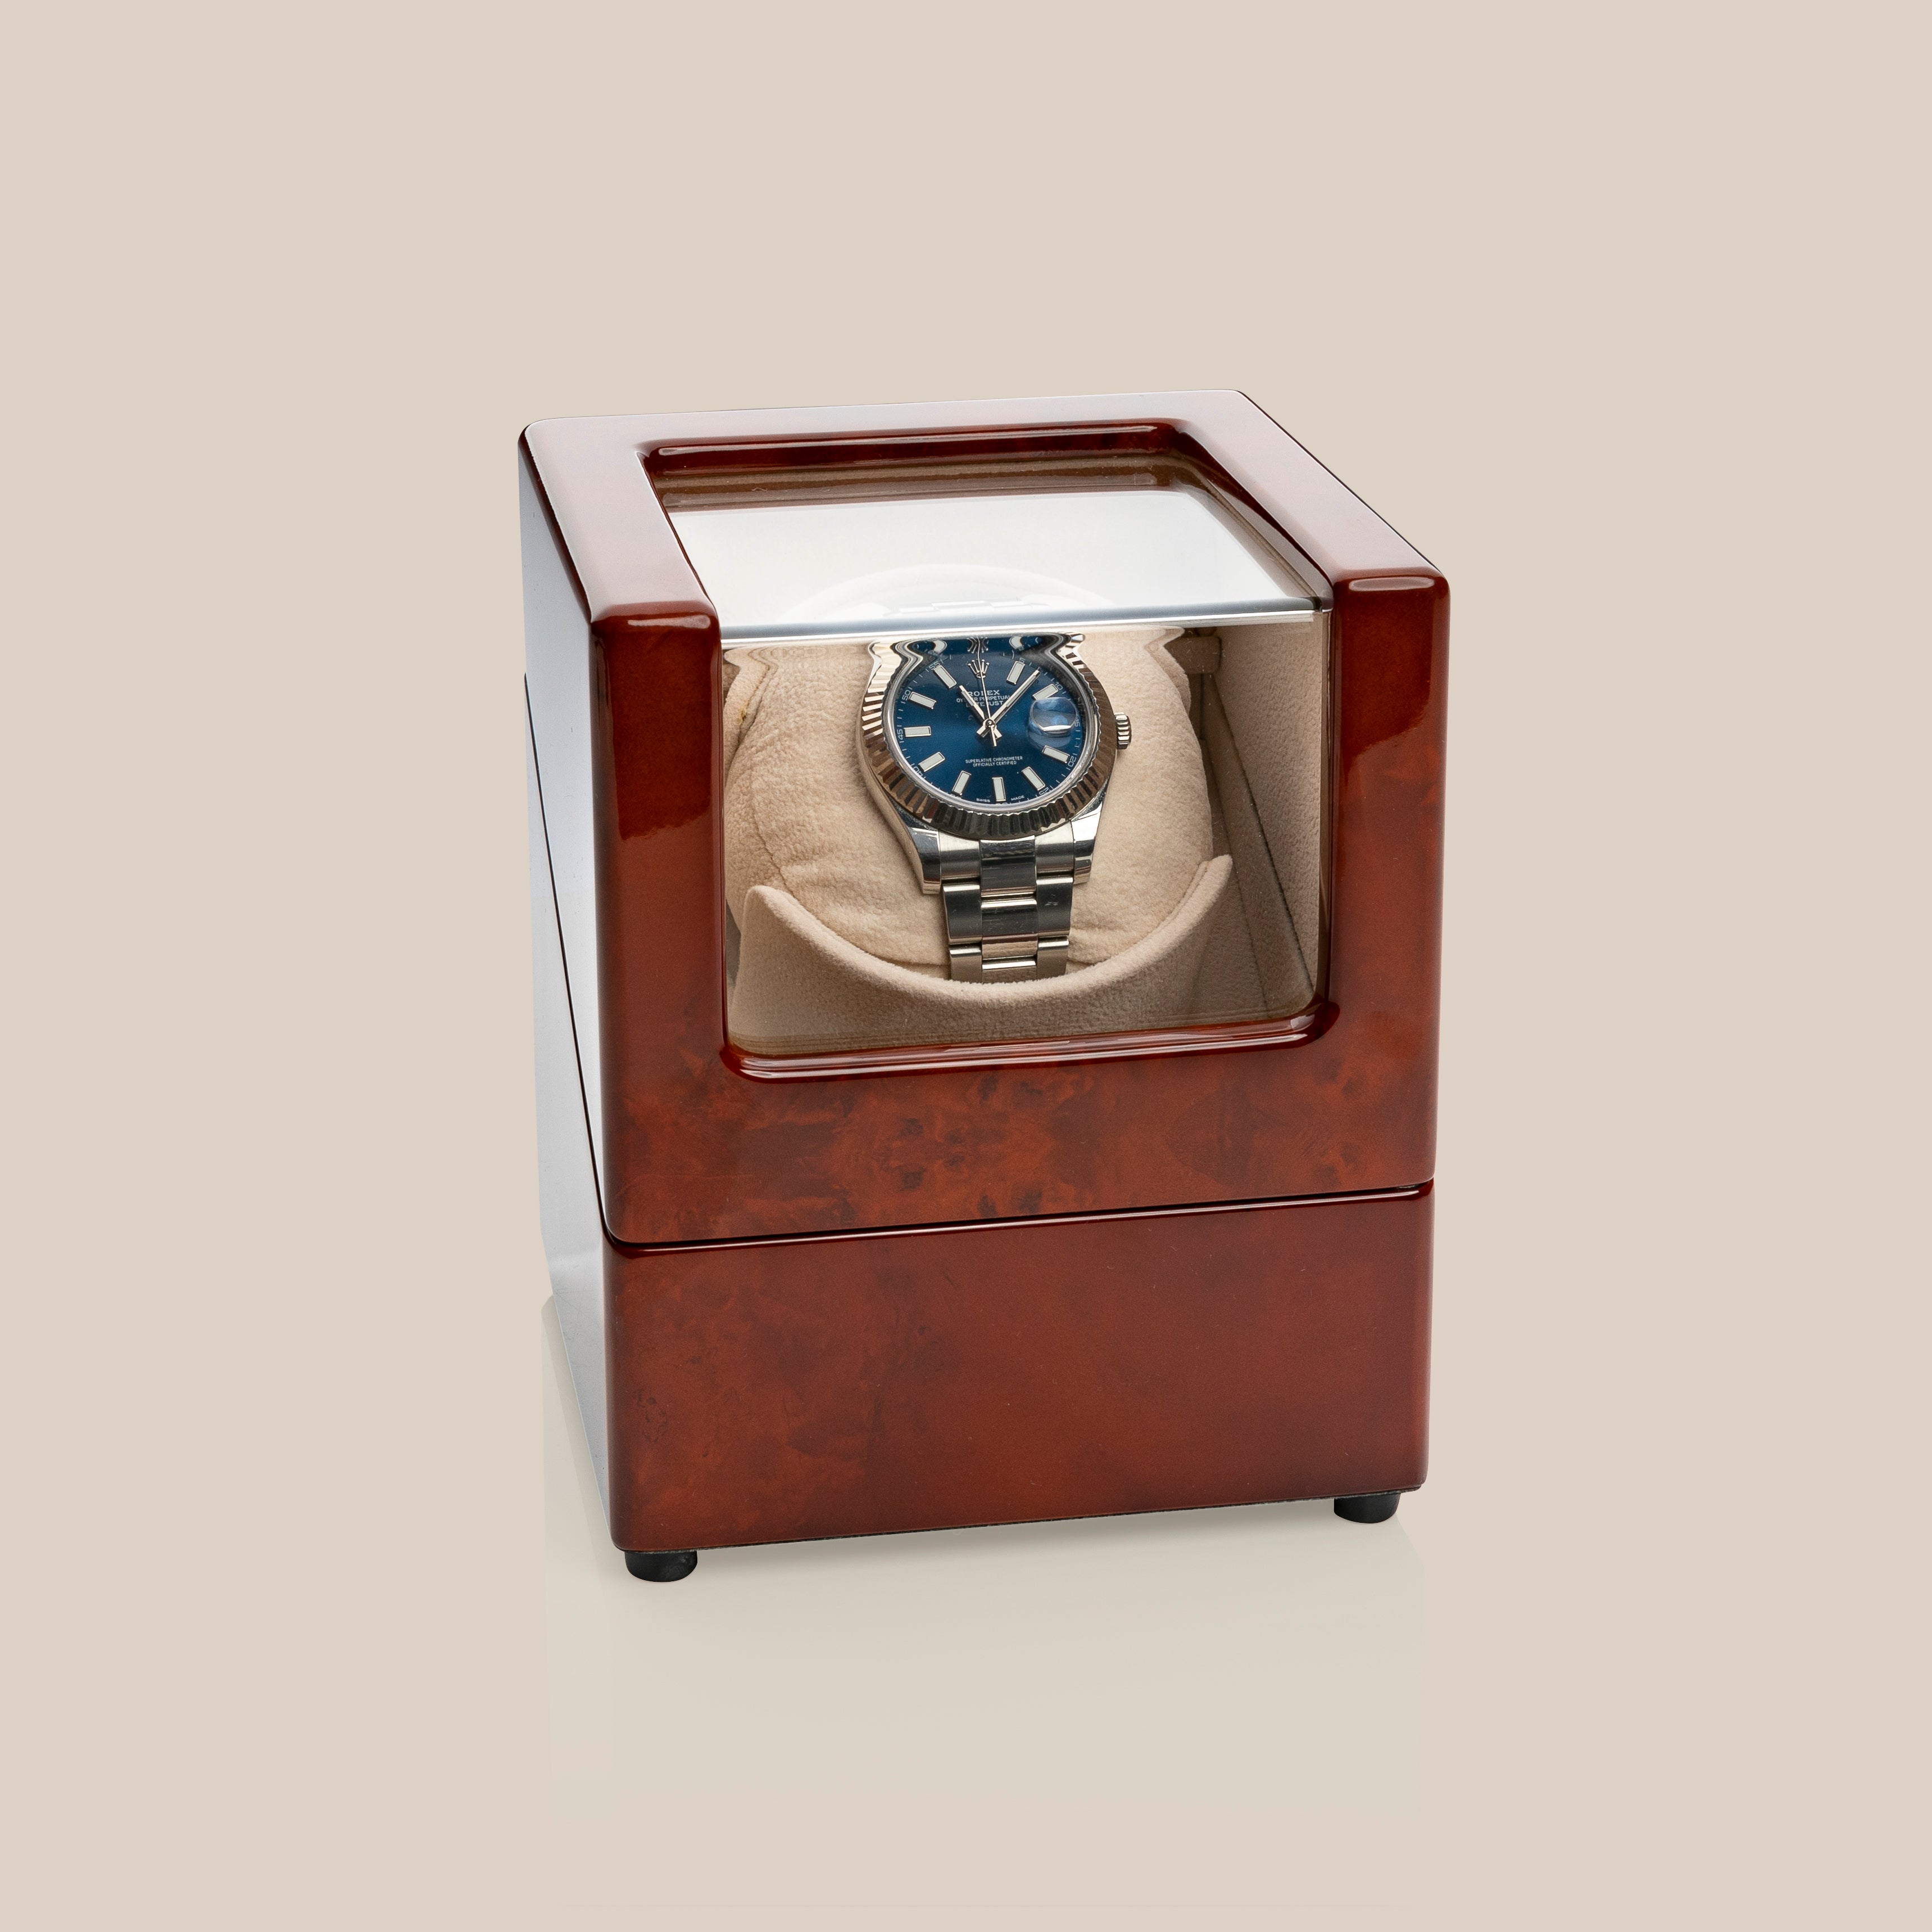 WW78 Remontoir de montre (Marron/Camel) - 1 montre